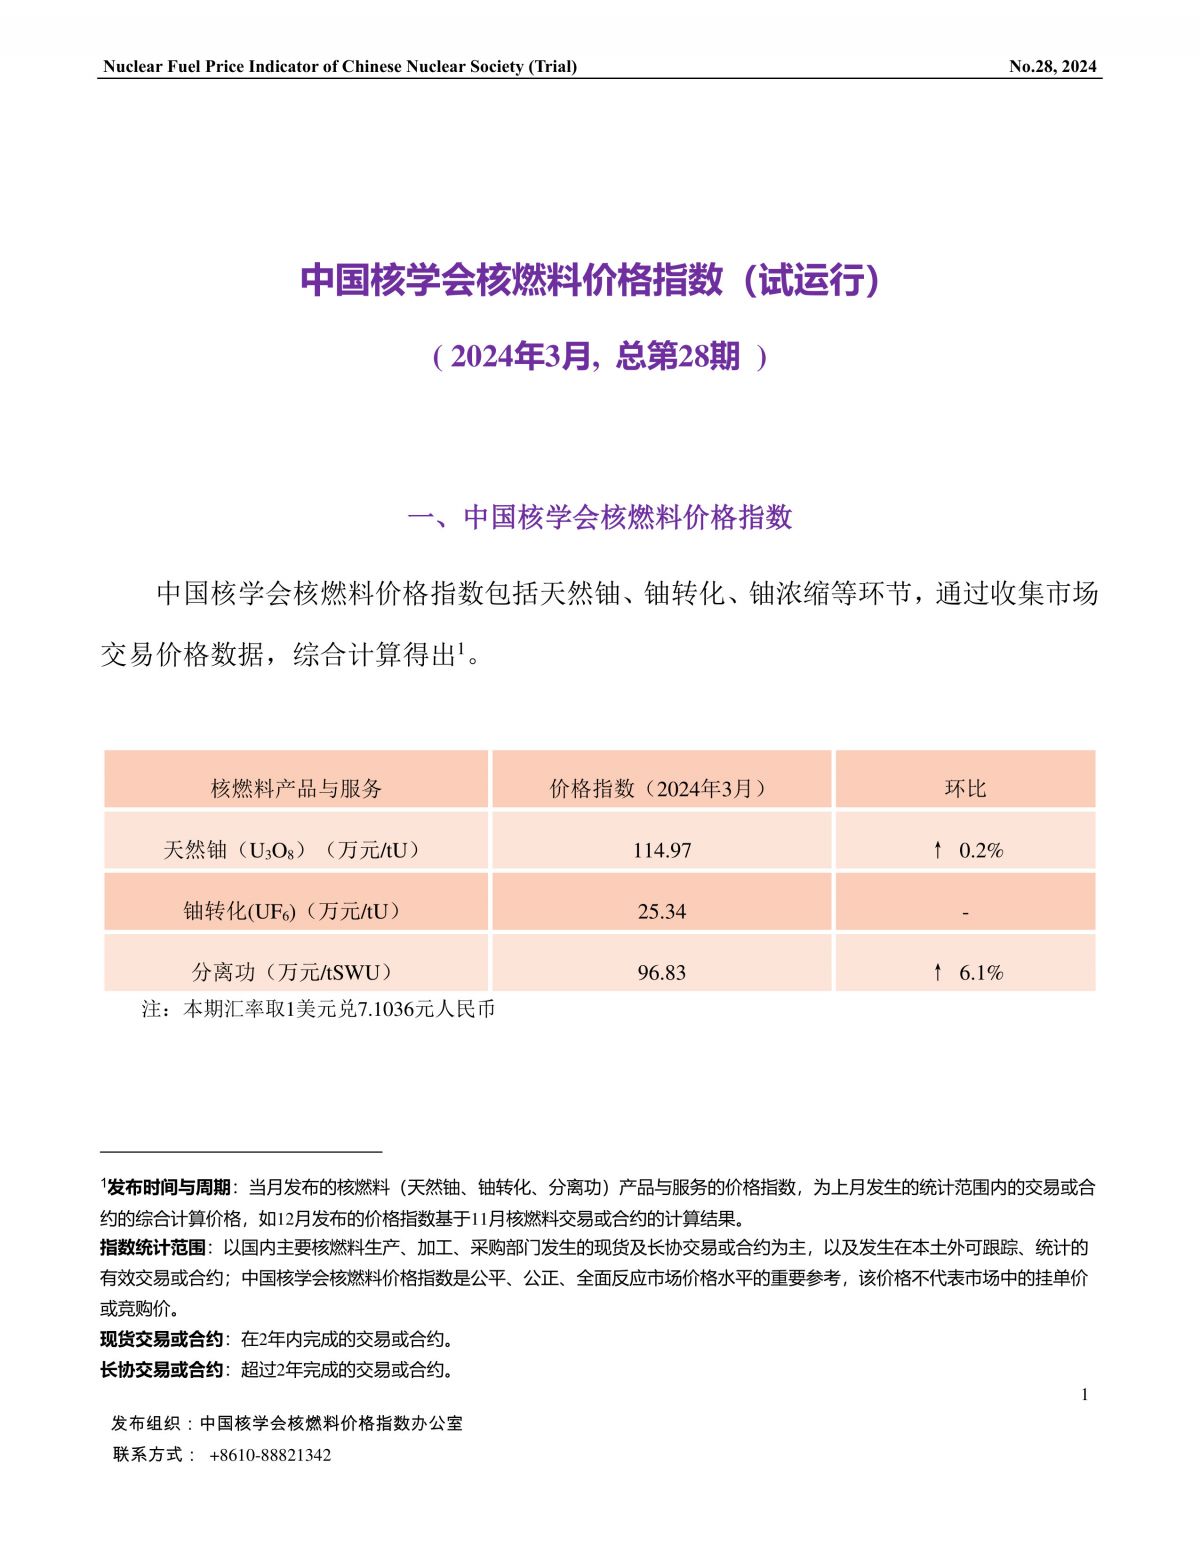 中国核学会核燃料价格指数(试运行)（2024年3月,总第28期）_CN-final-1.jpg